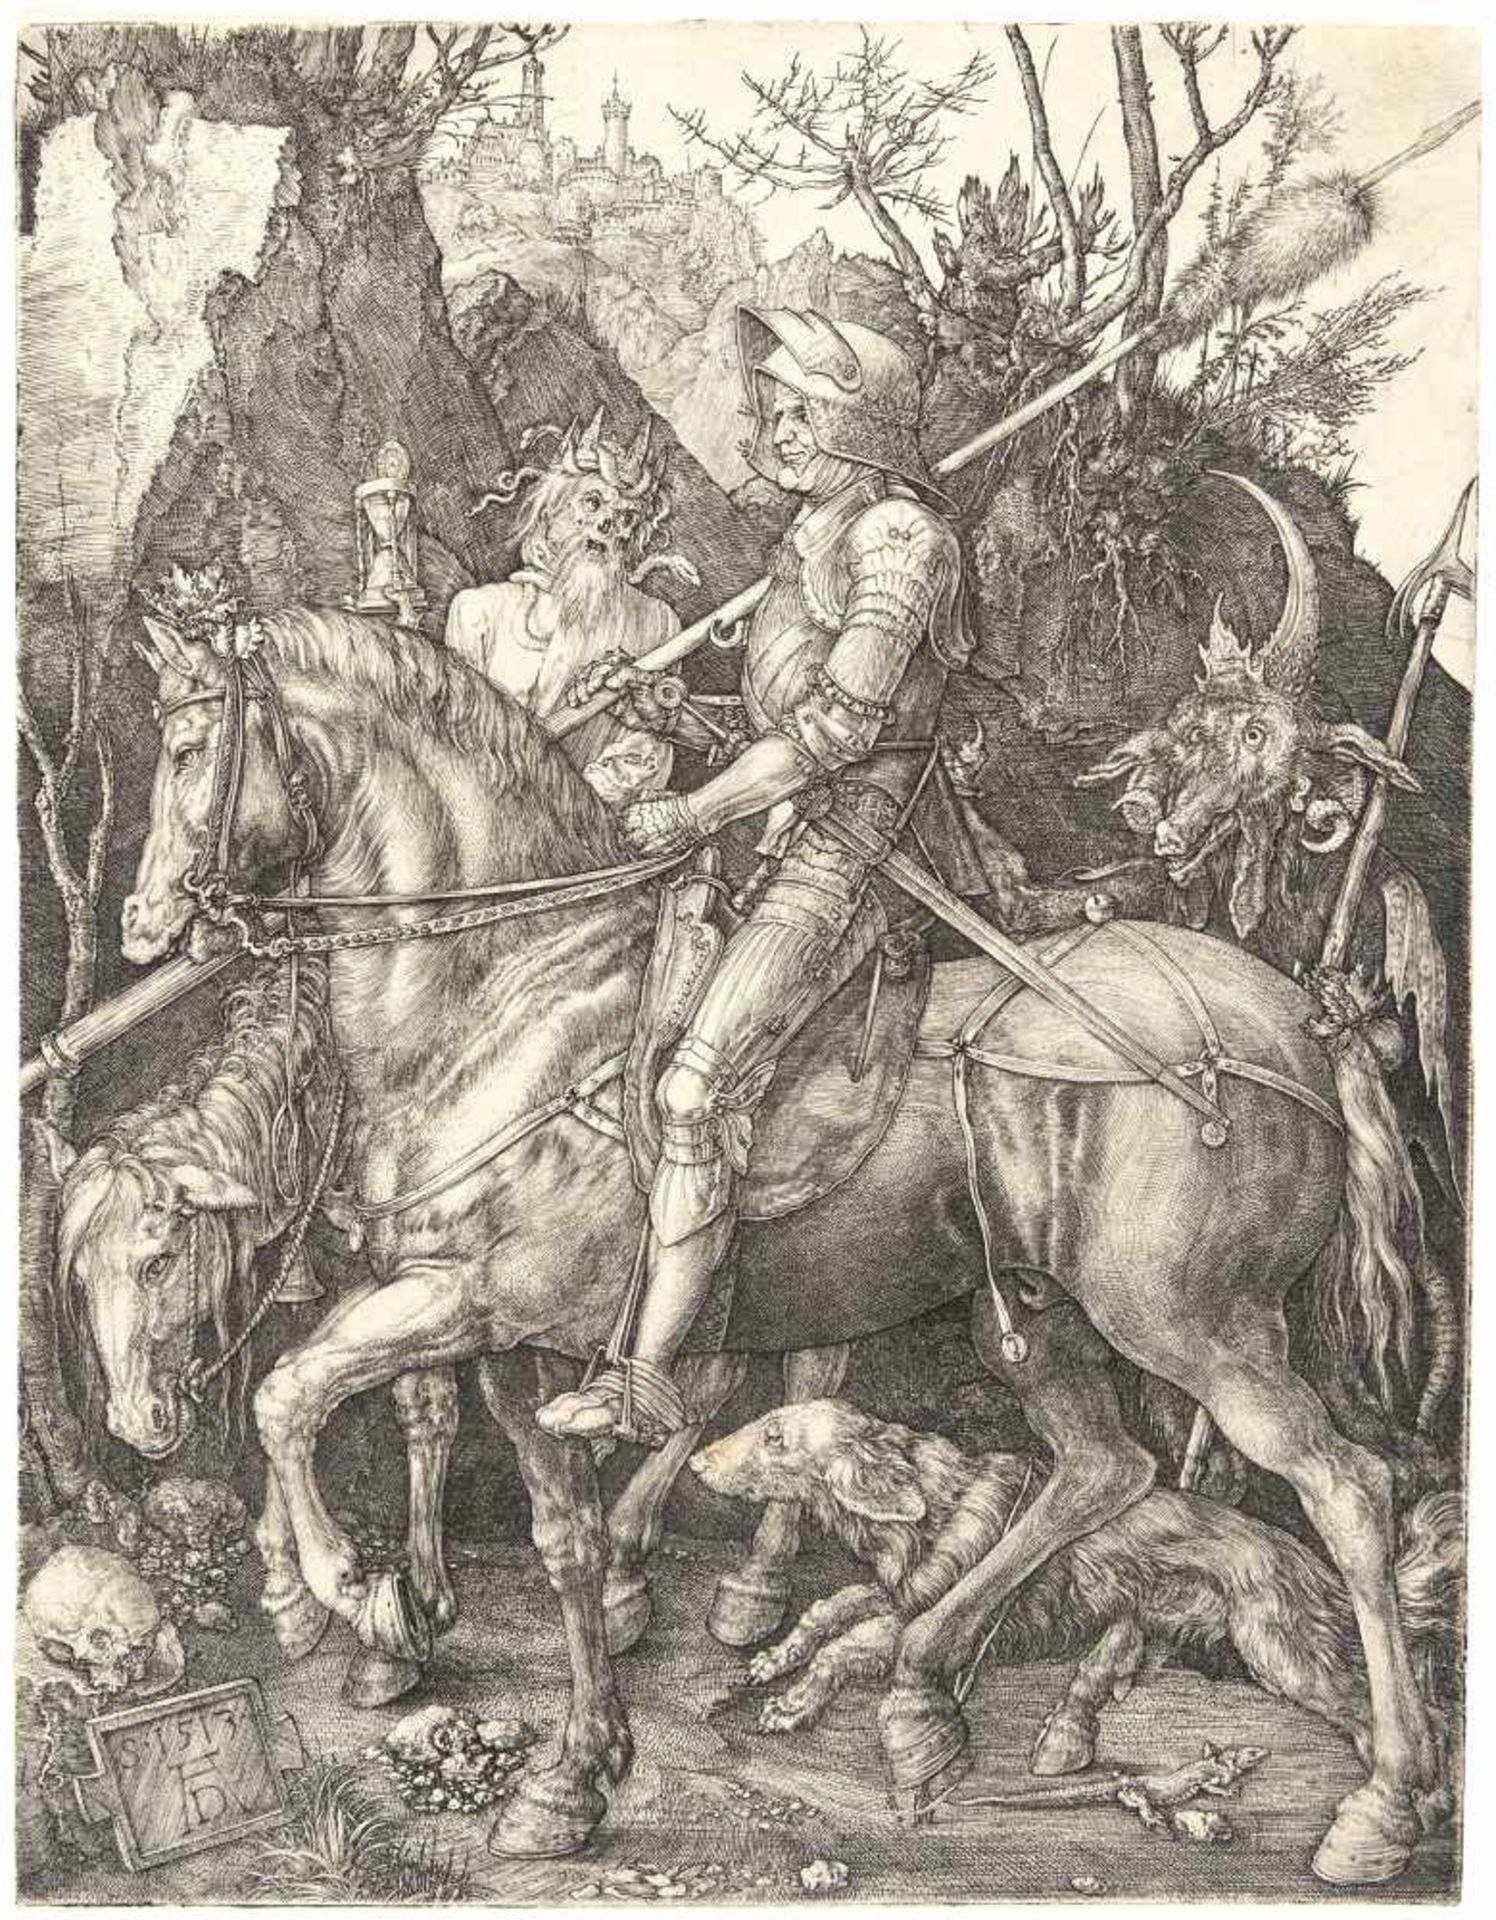 Albrecht Dürer1471 - Nuremberg - 1528Ritter, Tod und TeufelKupferstich auf Bütten ohne Wz. (1513).